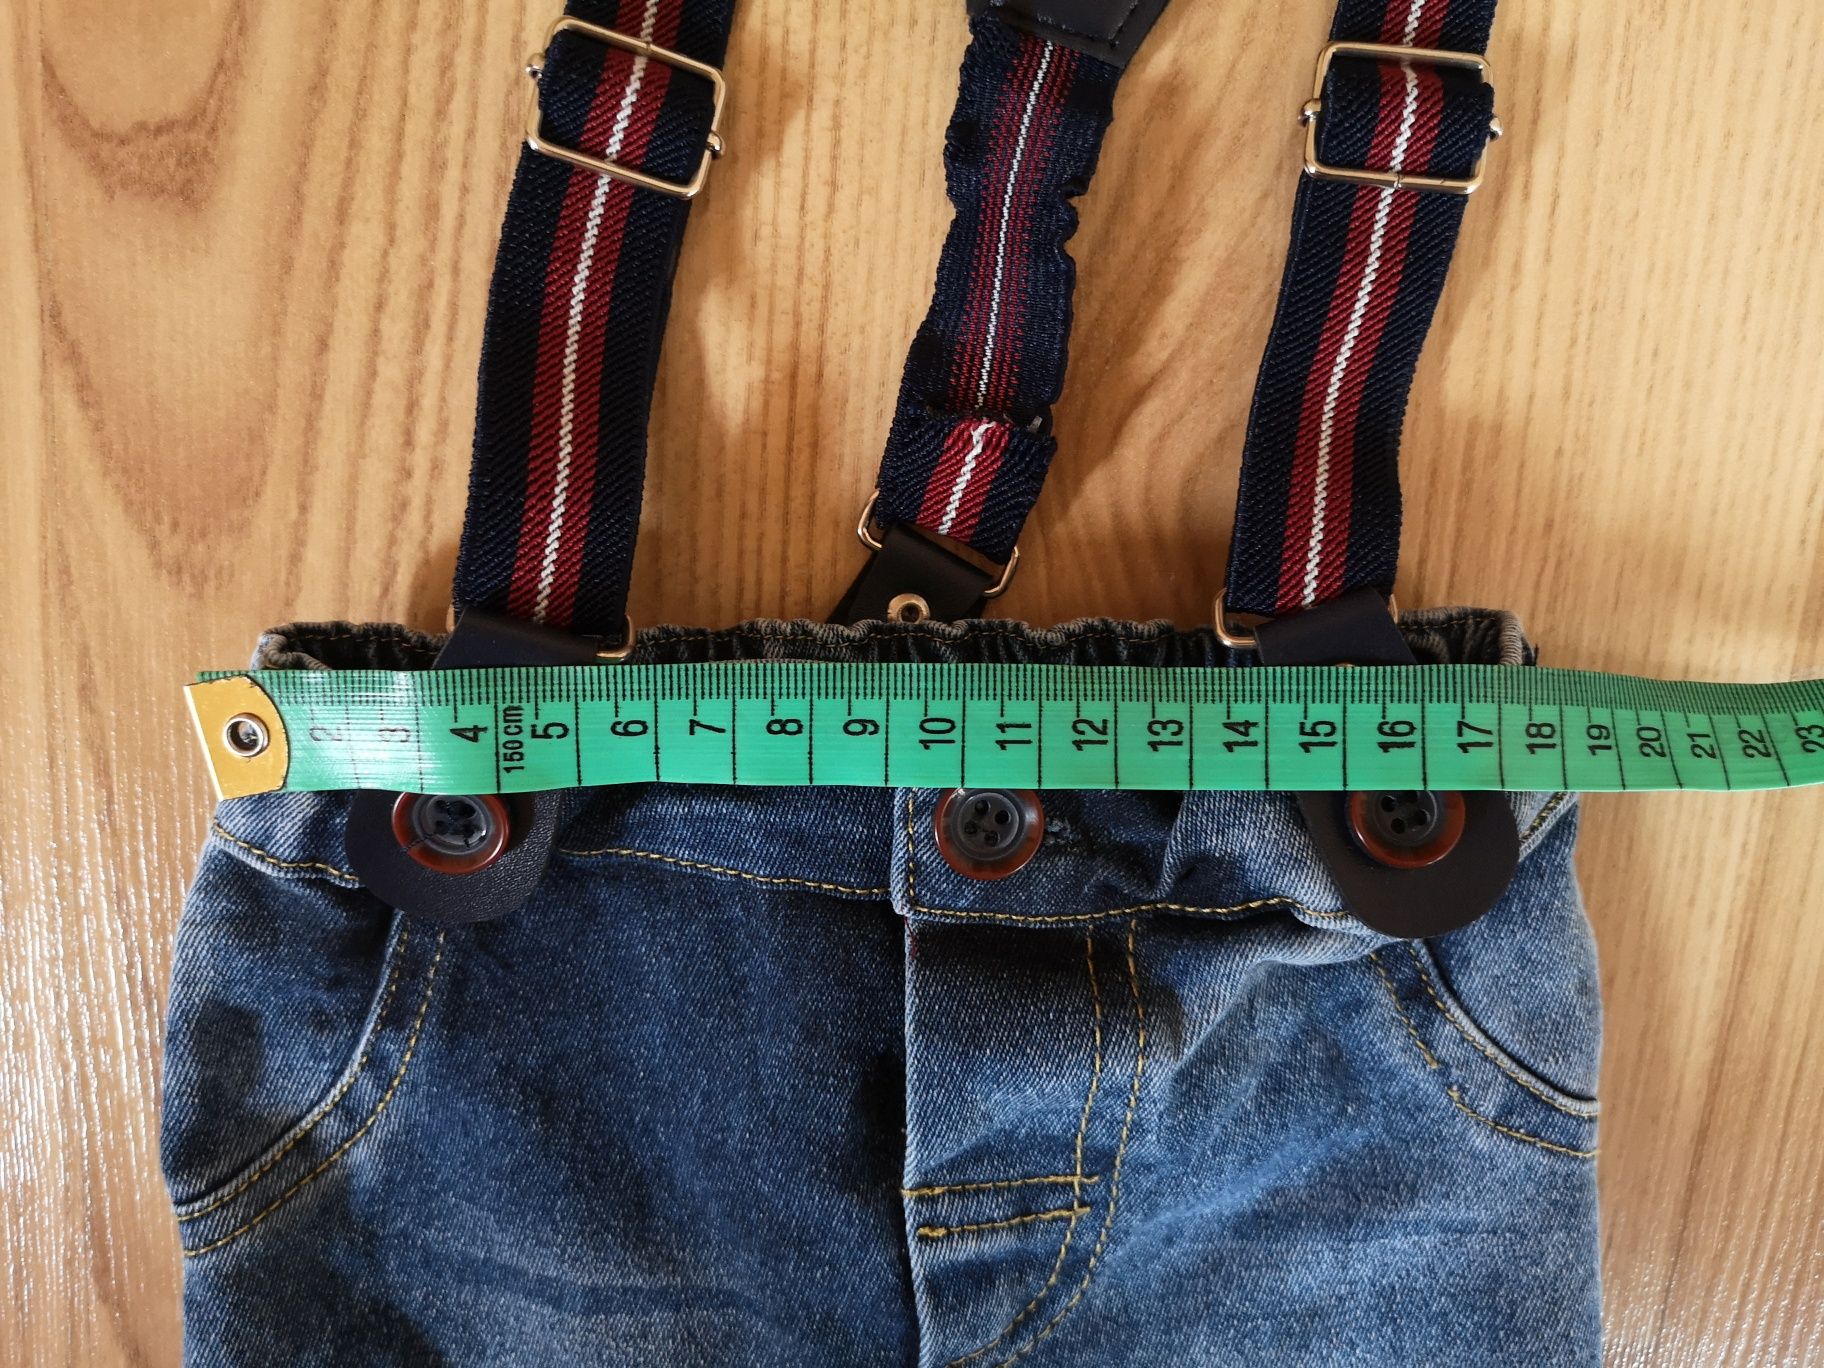 Spodnie jeansowe chłopięce z szelkami